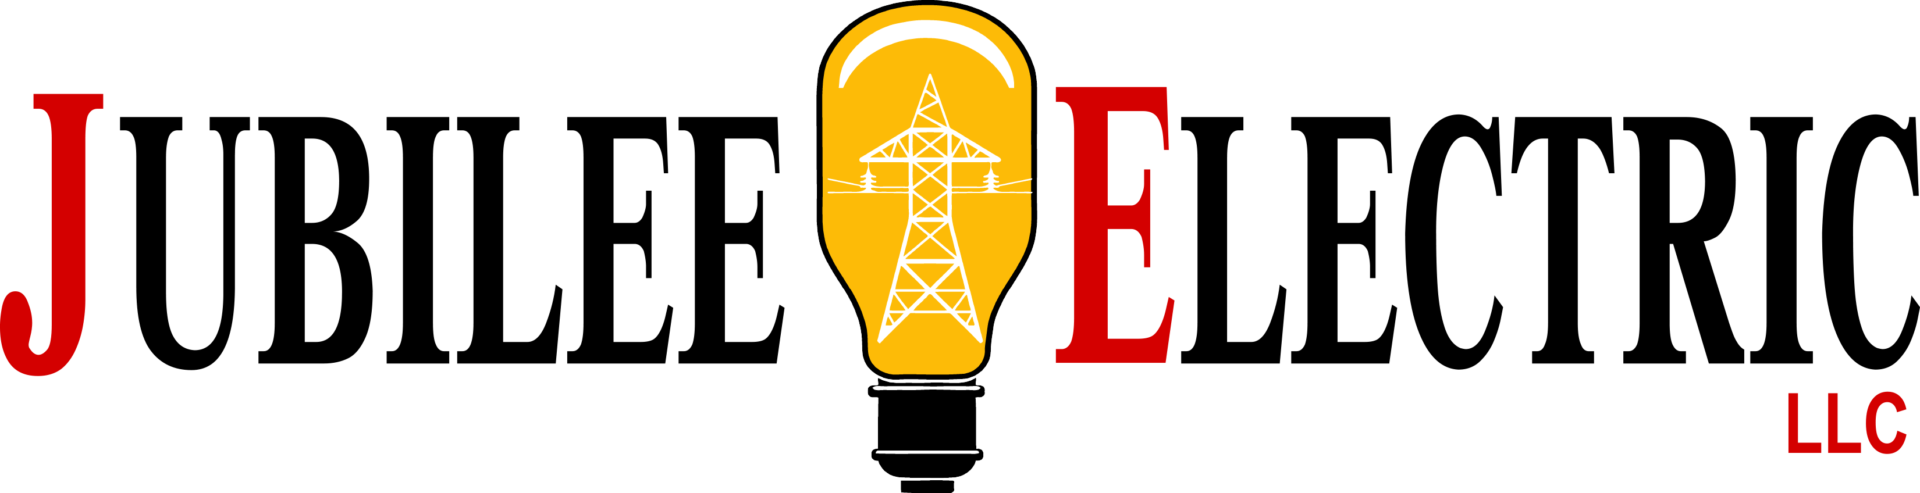 Jubilee Electric Logo